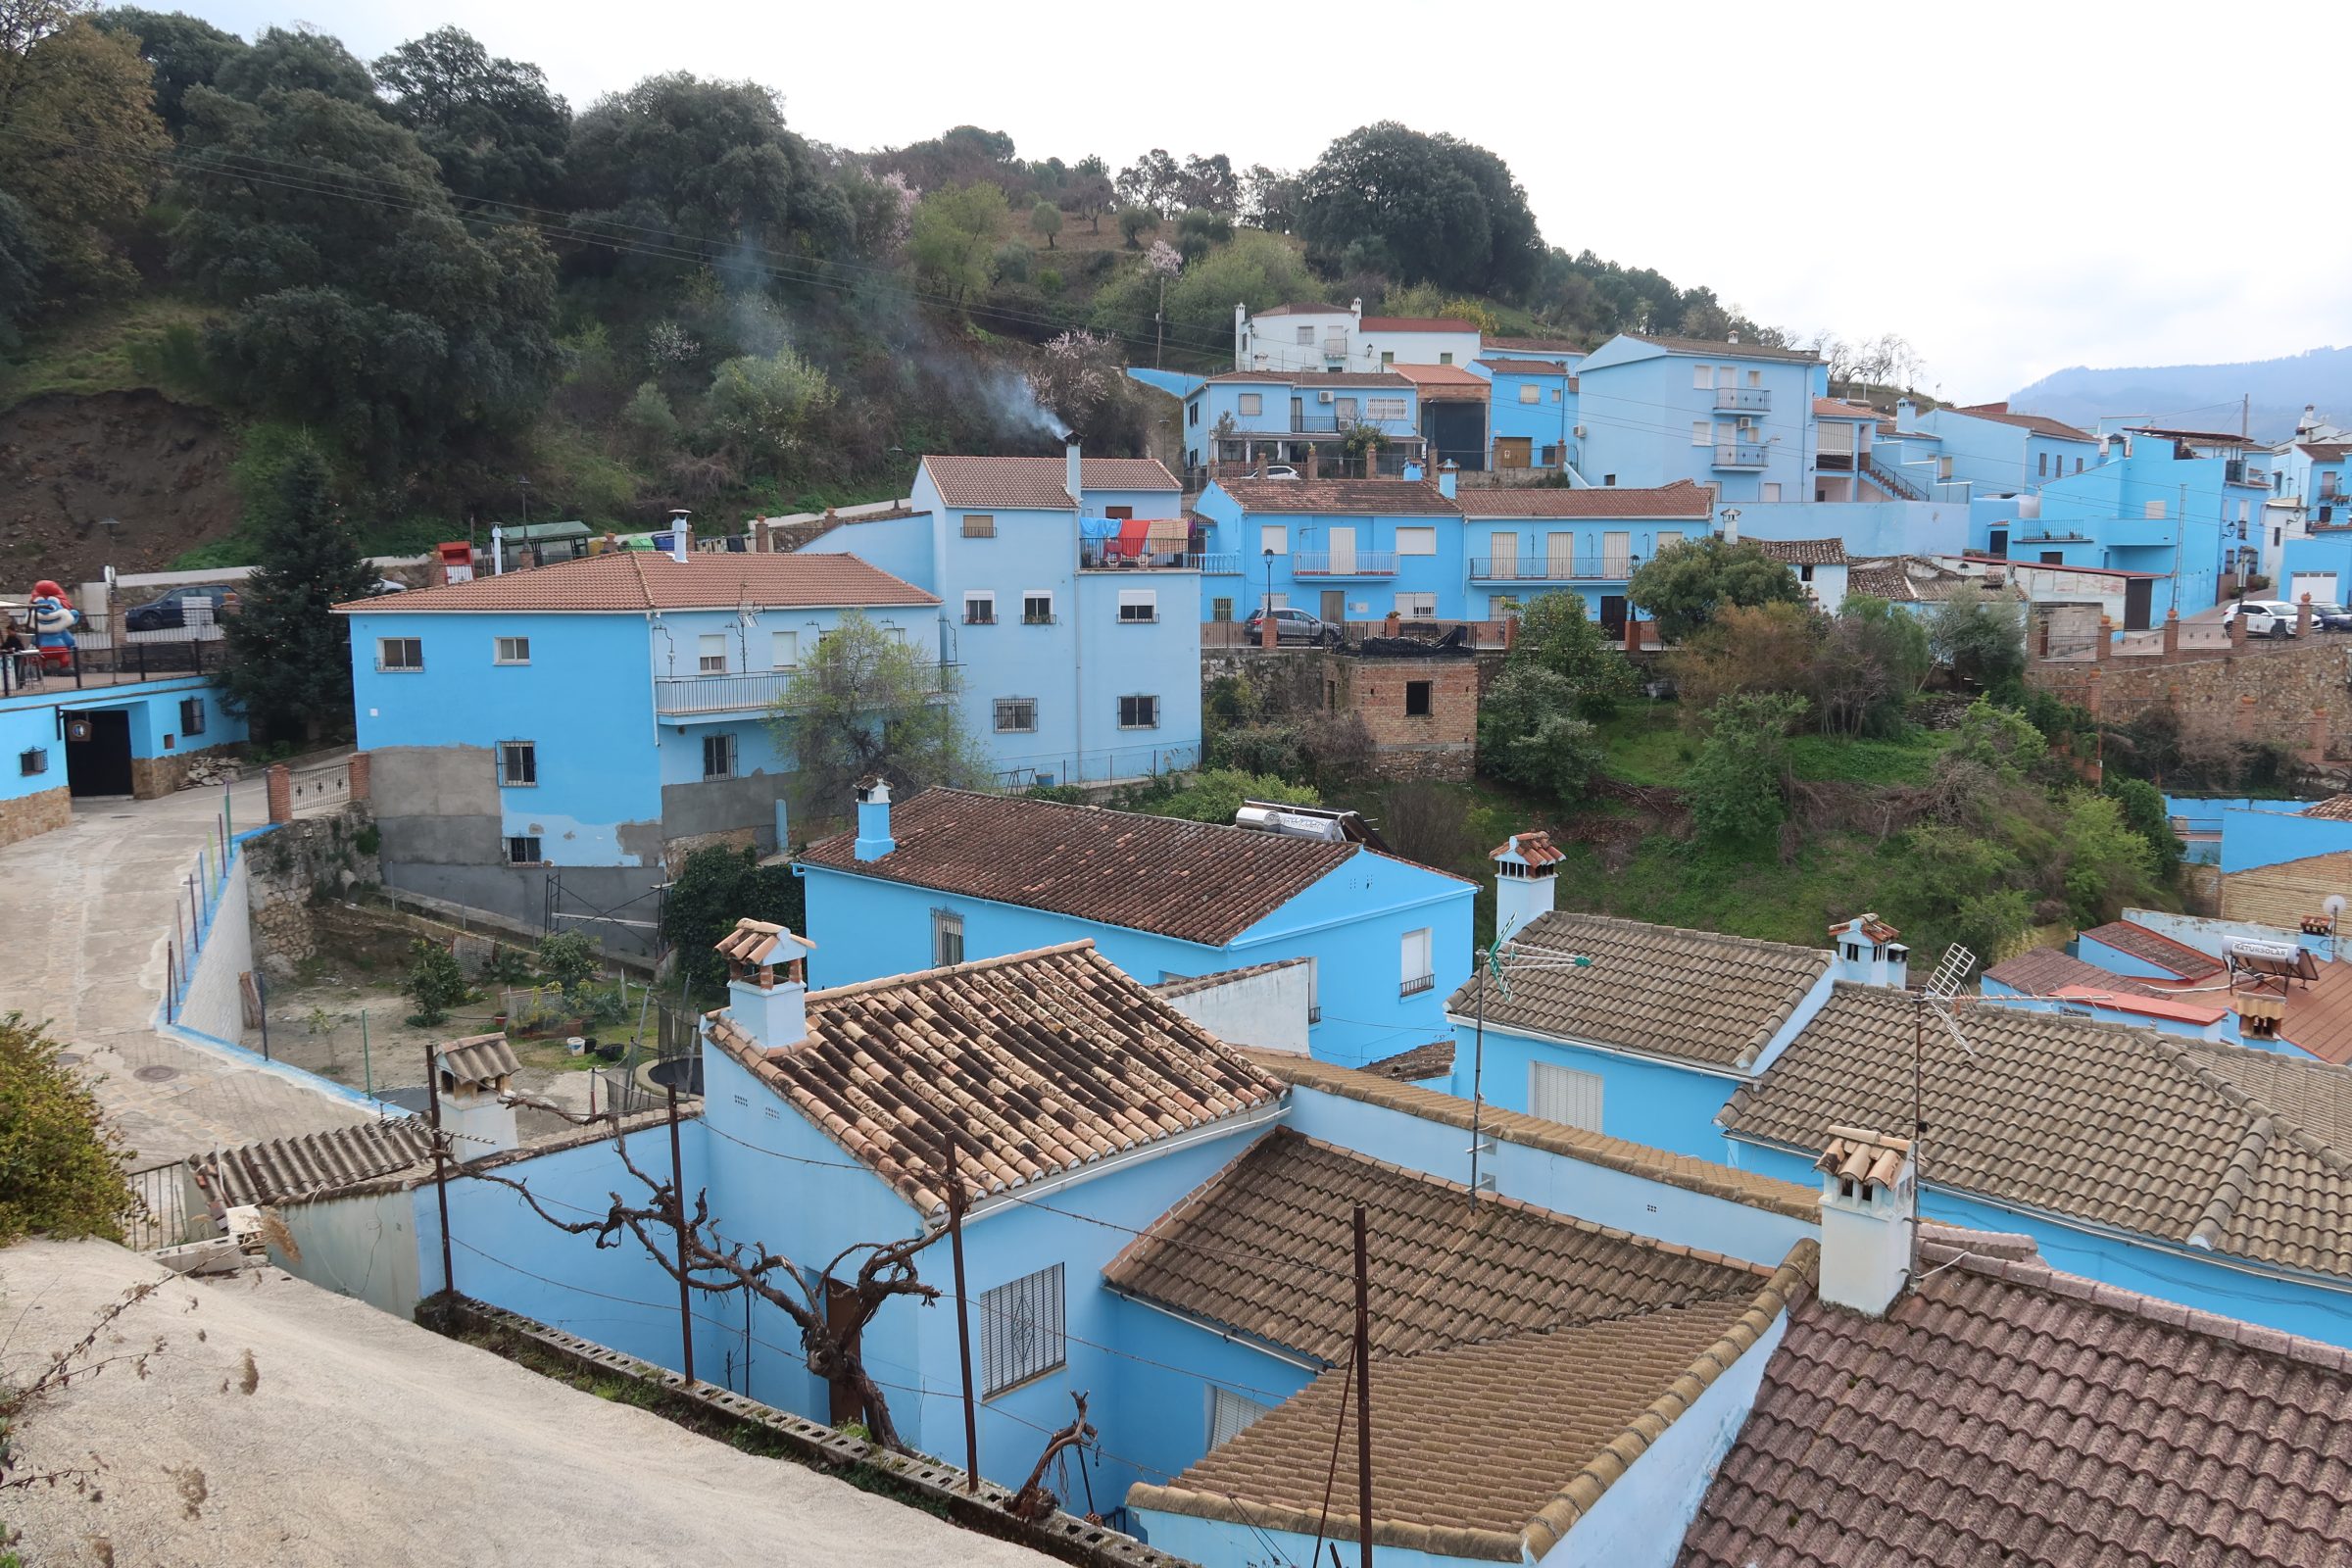 Júzcar, šmoulí vesnice se šmoulou vlevo | Tipy pro obytné vozy a zajímavá místa v jižním Španělsku